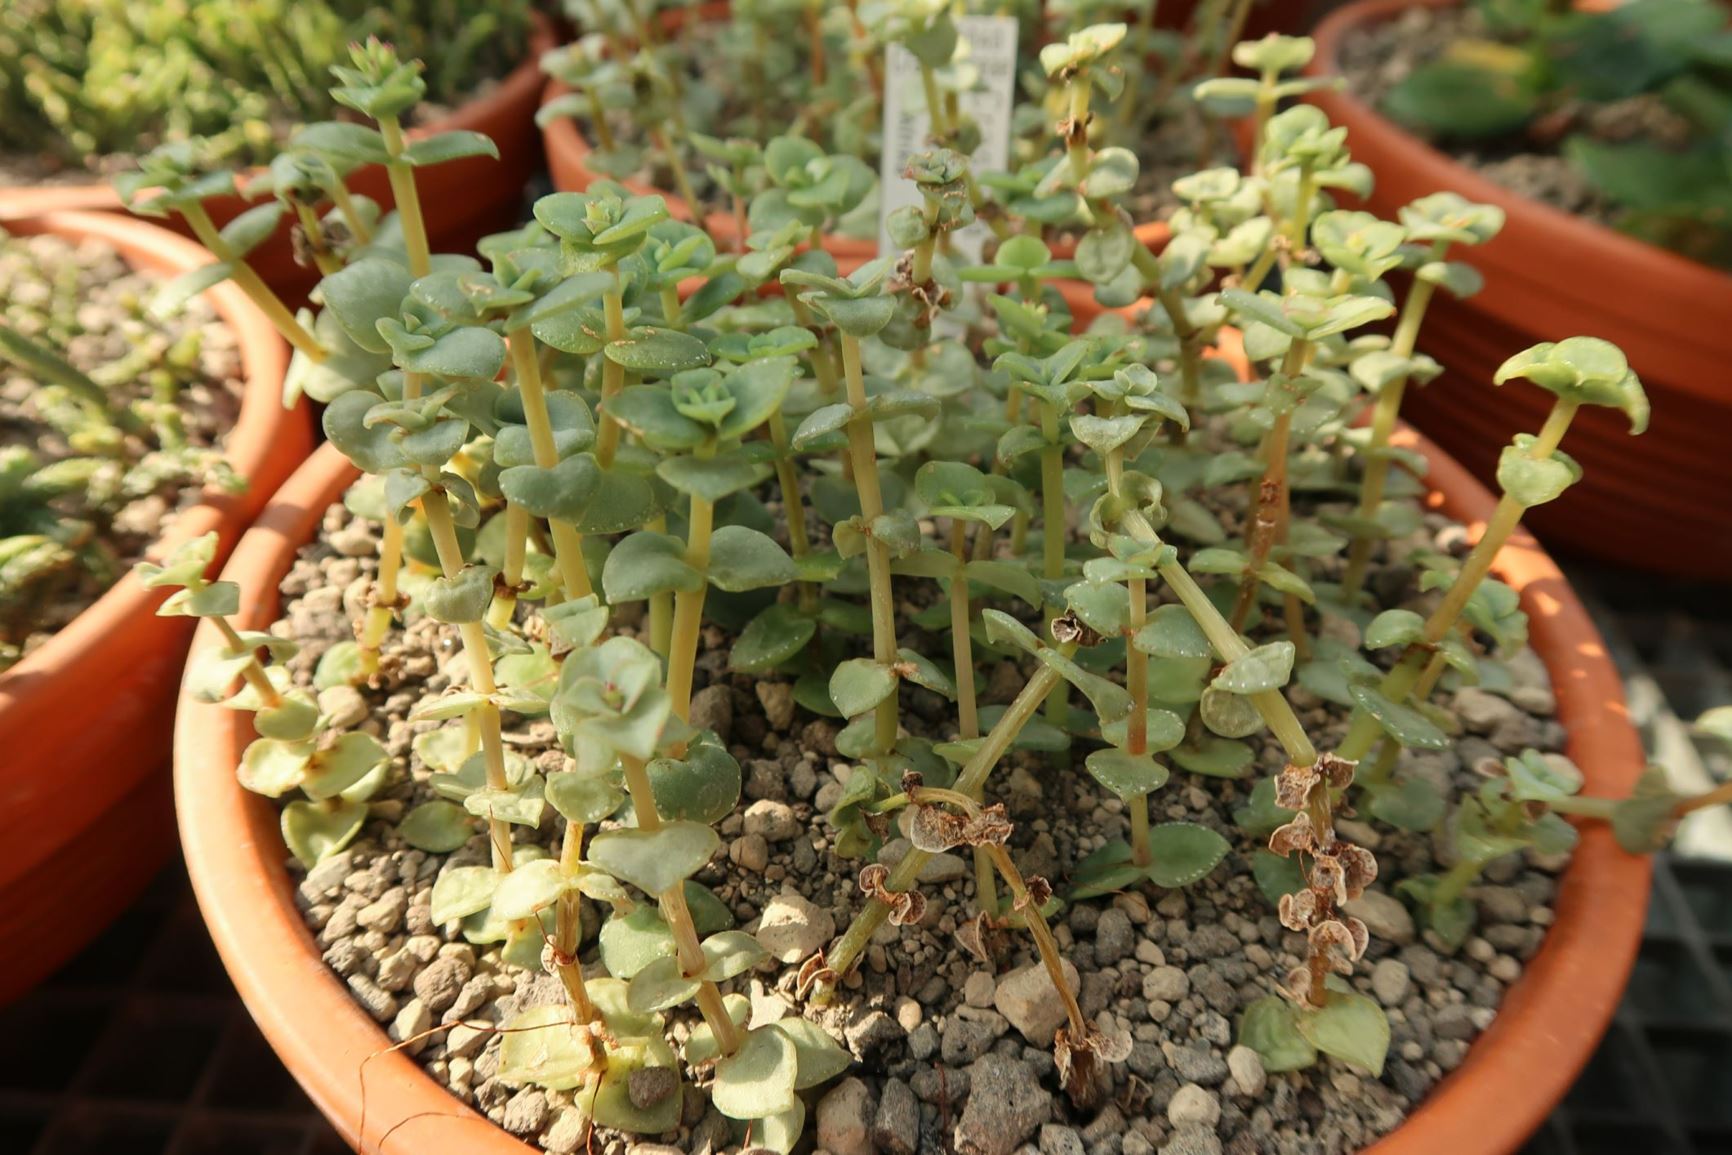 Crassula pellucida subsp. marginalis